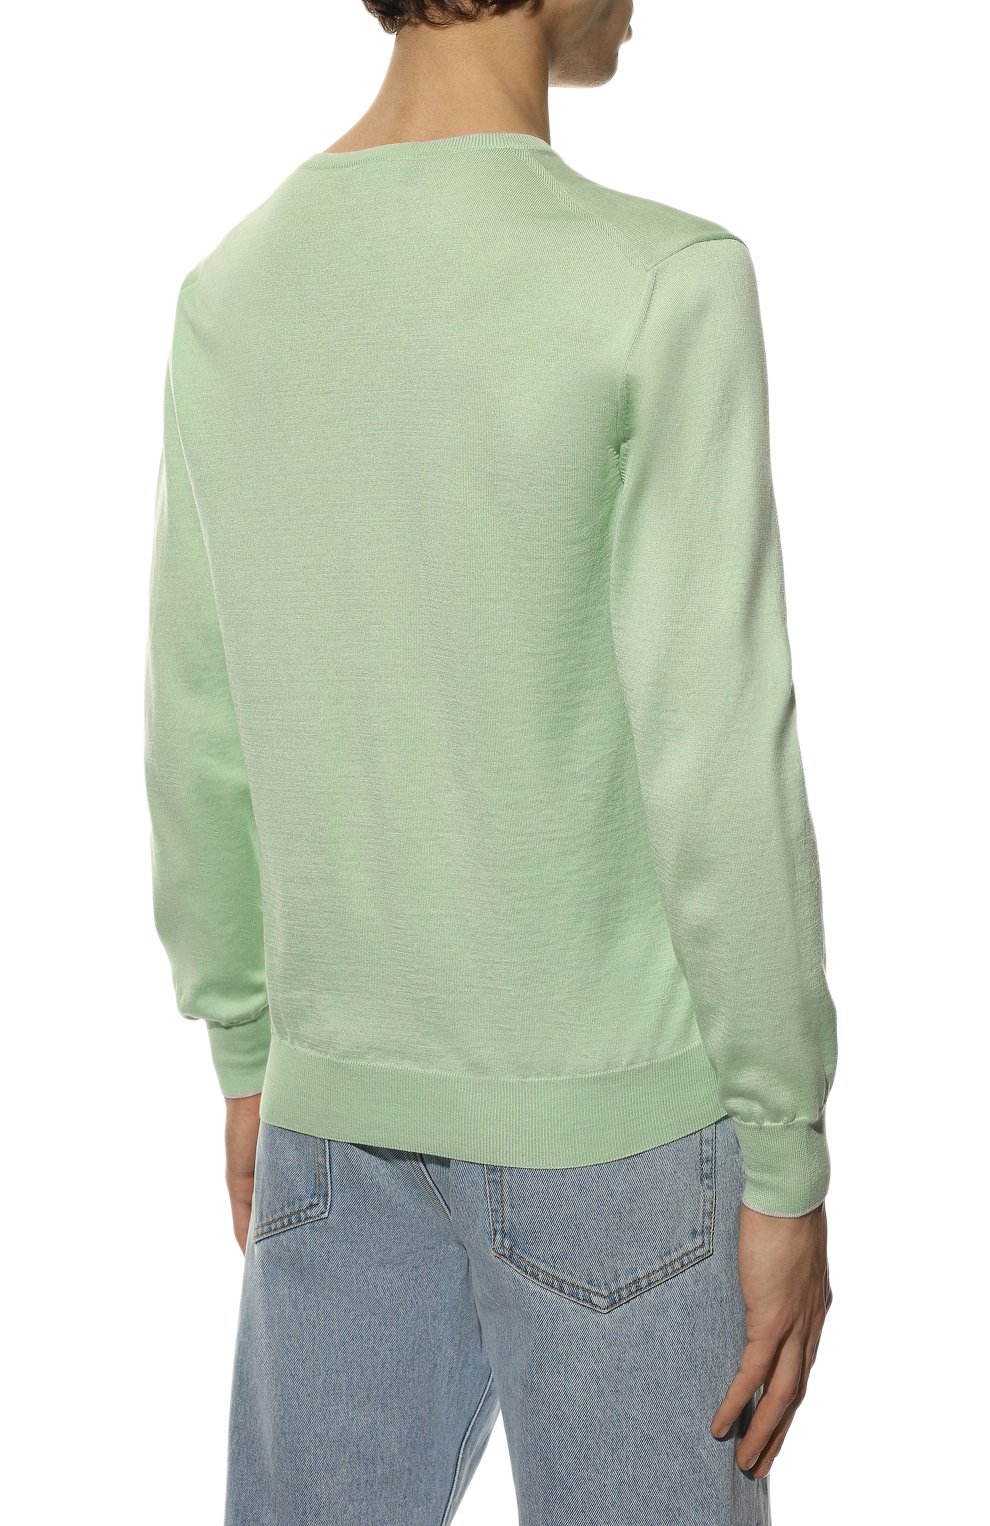 Мужской пуловер из шелка и хлопка GRAN SASSO светло-зеленого цвета, арт. 43115/16290 | Фото 4 (Материал внешний: Шелк, Хлопок; Рукава: Длинные; Принт: Без принта; Длина (для топов): Стандартные; Вырез: V-образный; Мужское Кросс-КТ: Пуловеры; Стили: Кэжуэл)